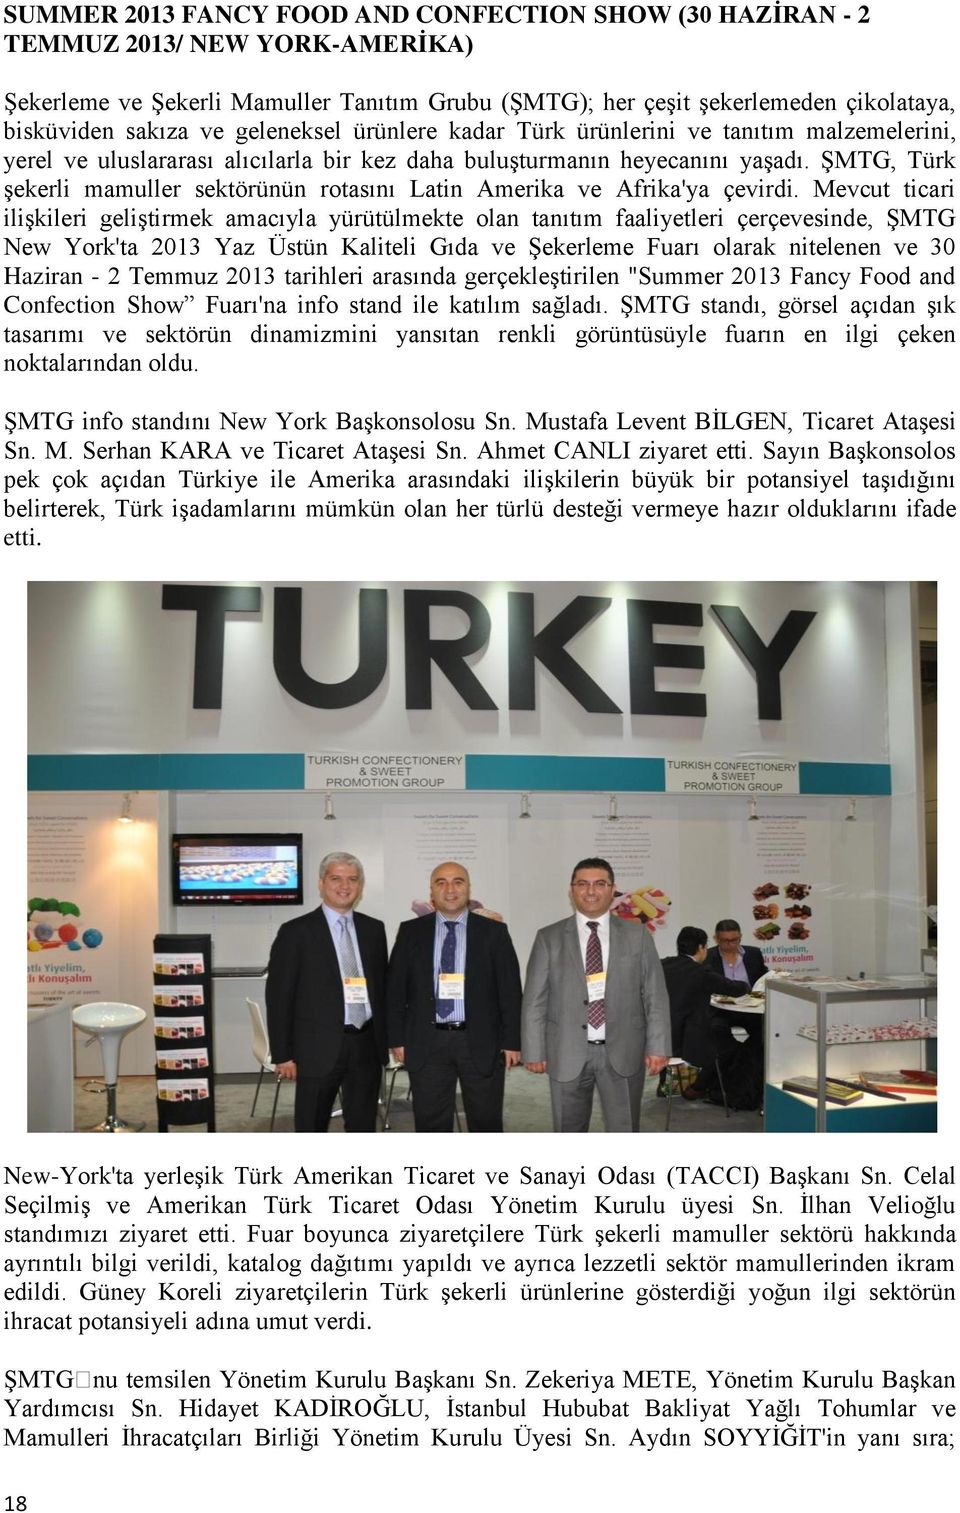 ŞMTG, Türk şekerli mamuller sektörünün rotasını Latin Amerika ve Afrika'ya çevirdi.